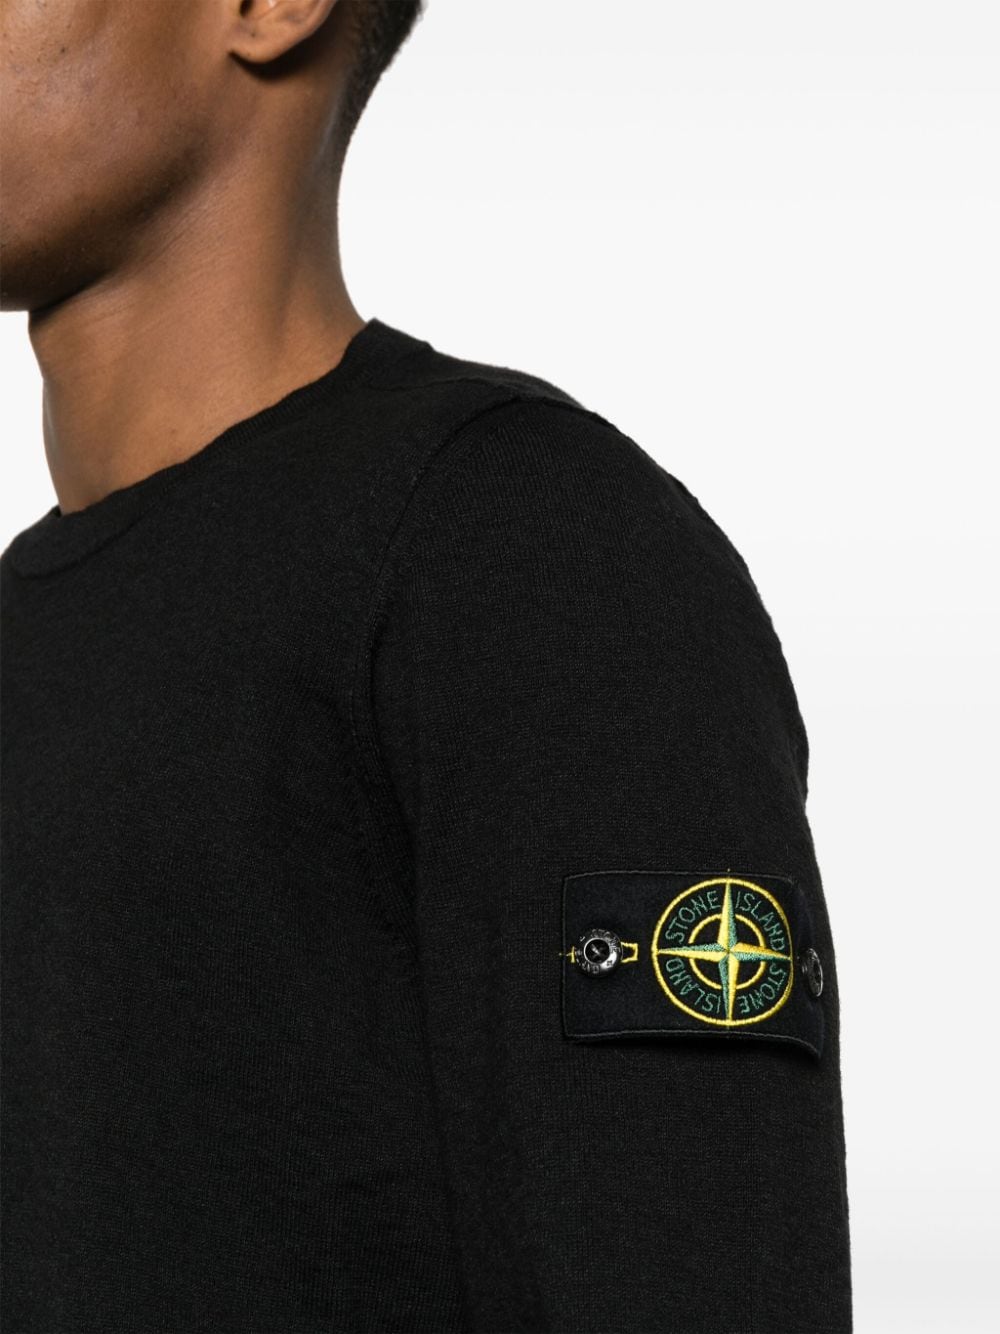 Black Compass-badge jumper<BR/><BR/><BR/>